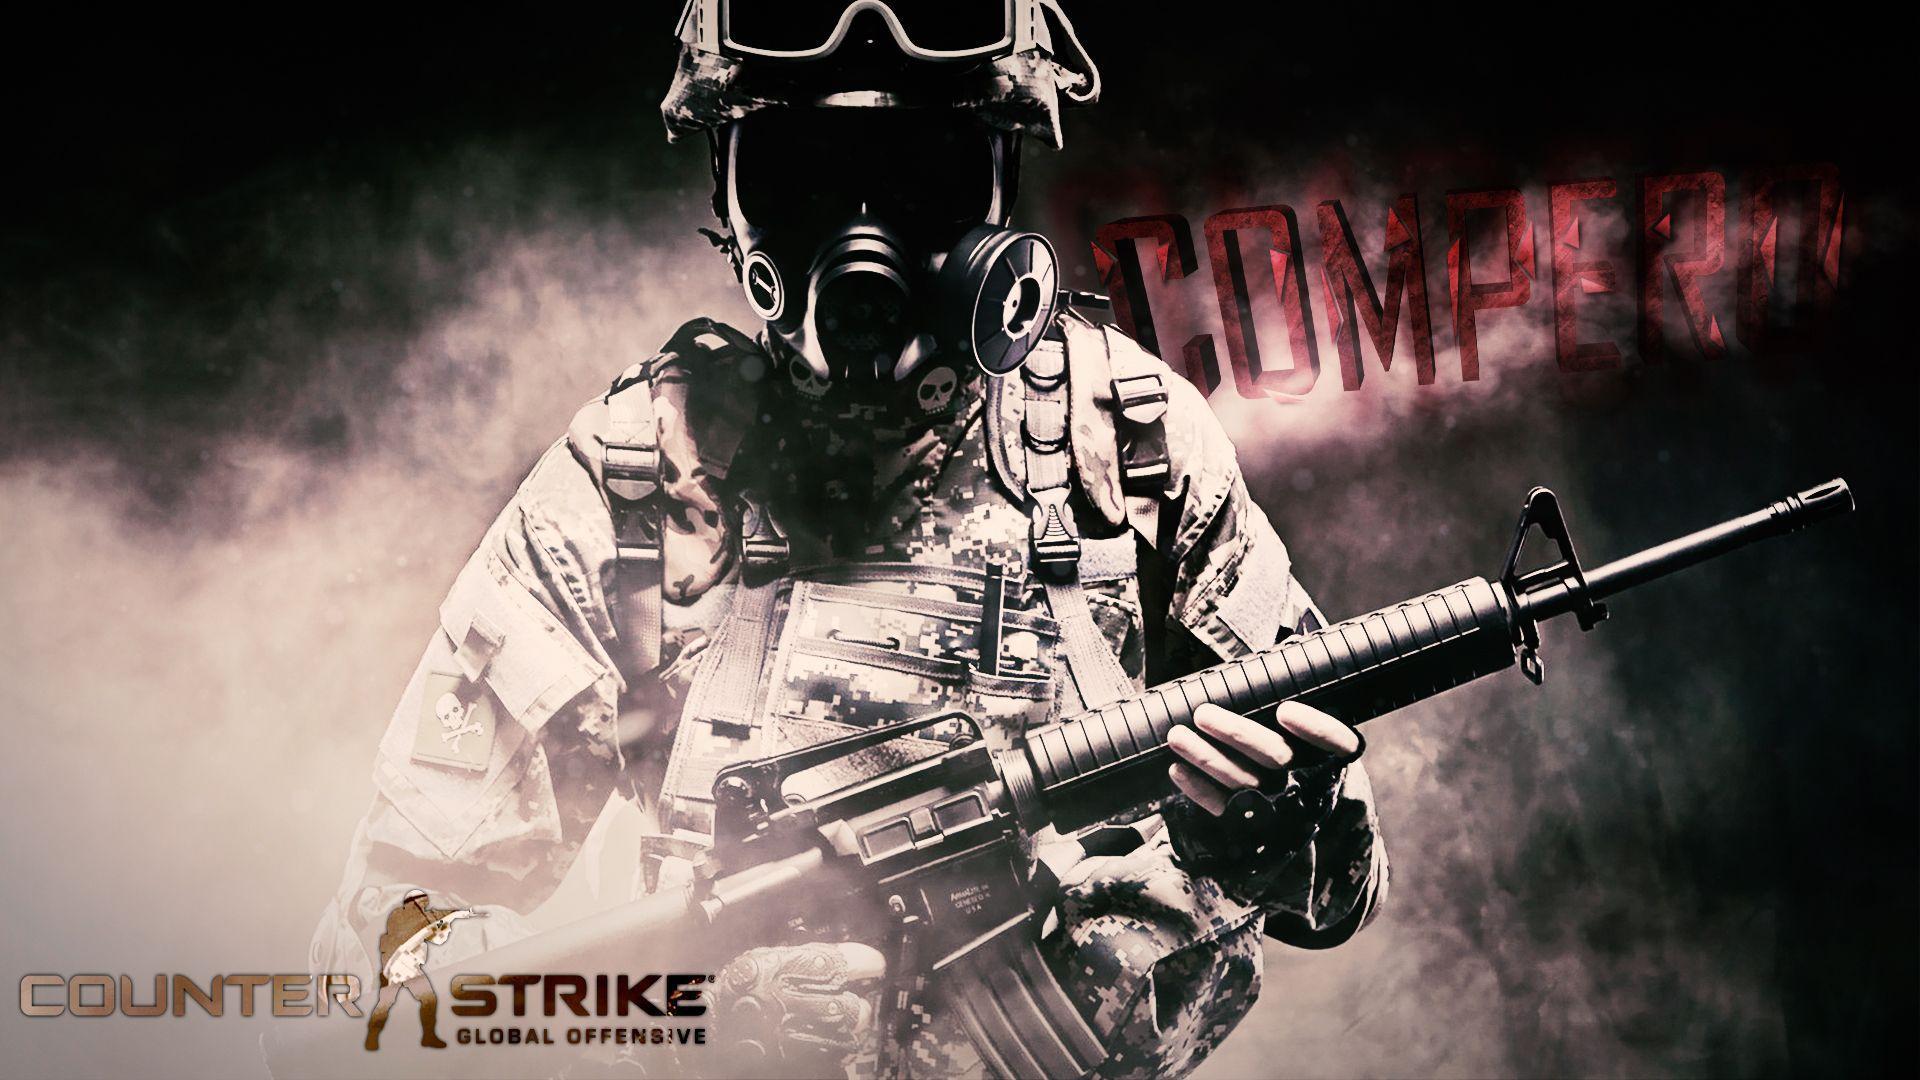 Counter Strike HD Wallpaper 1080p